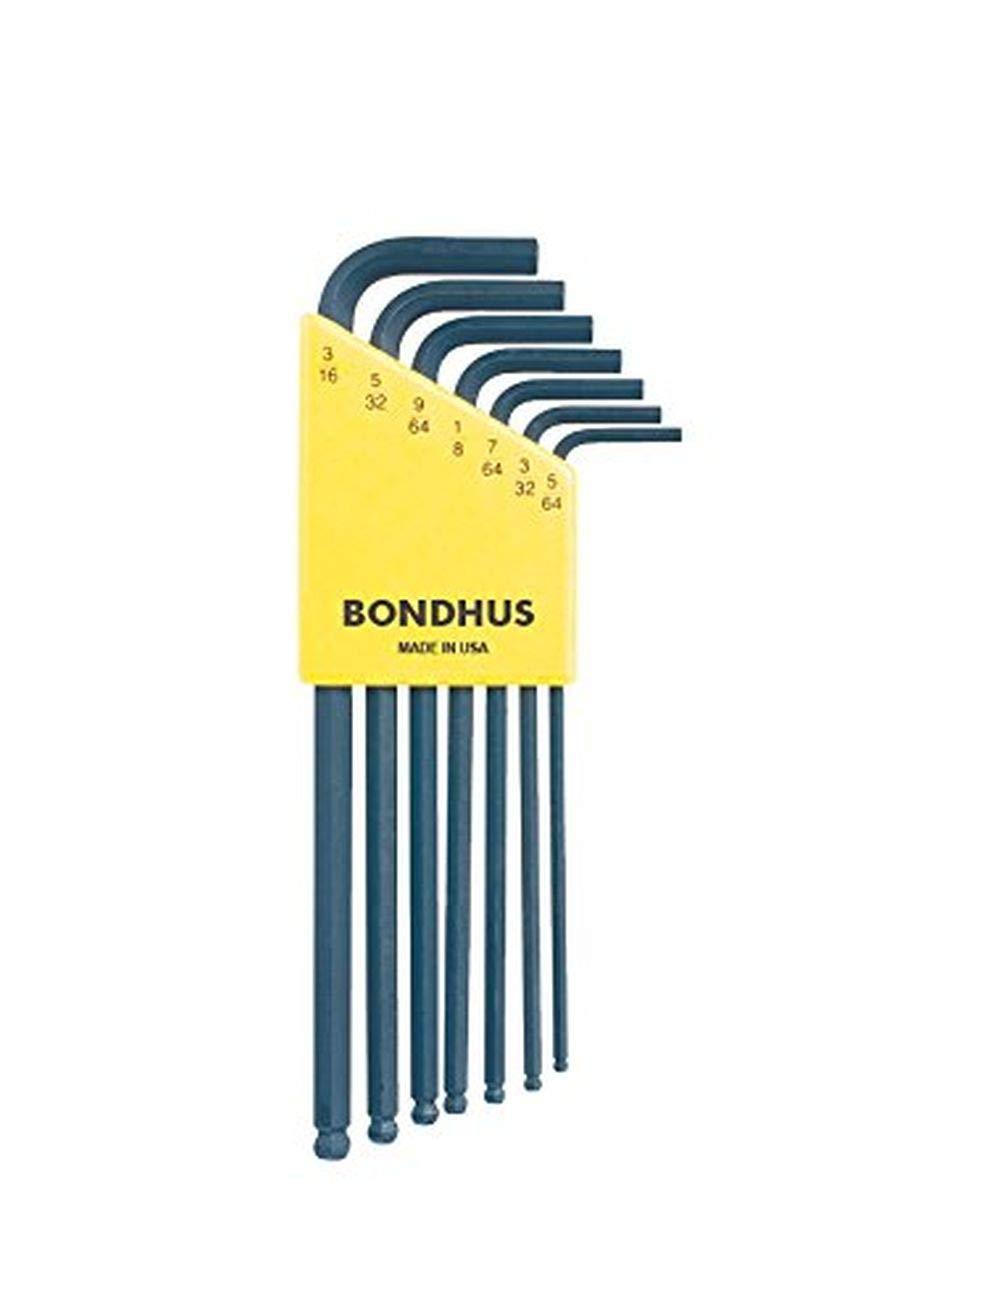 Bondhus 10945 Set of 7 Balldriver L-wrenches, sizes 5/64-3/16"